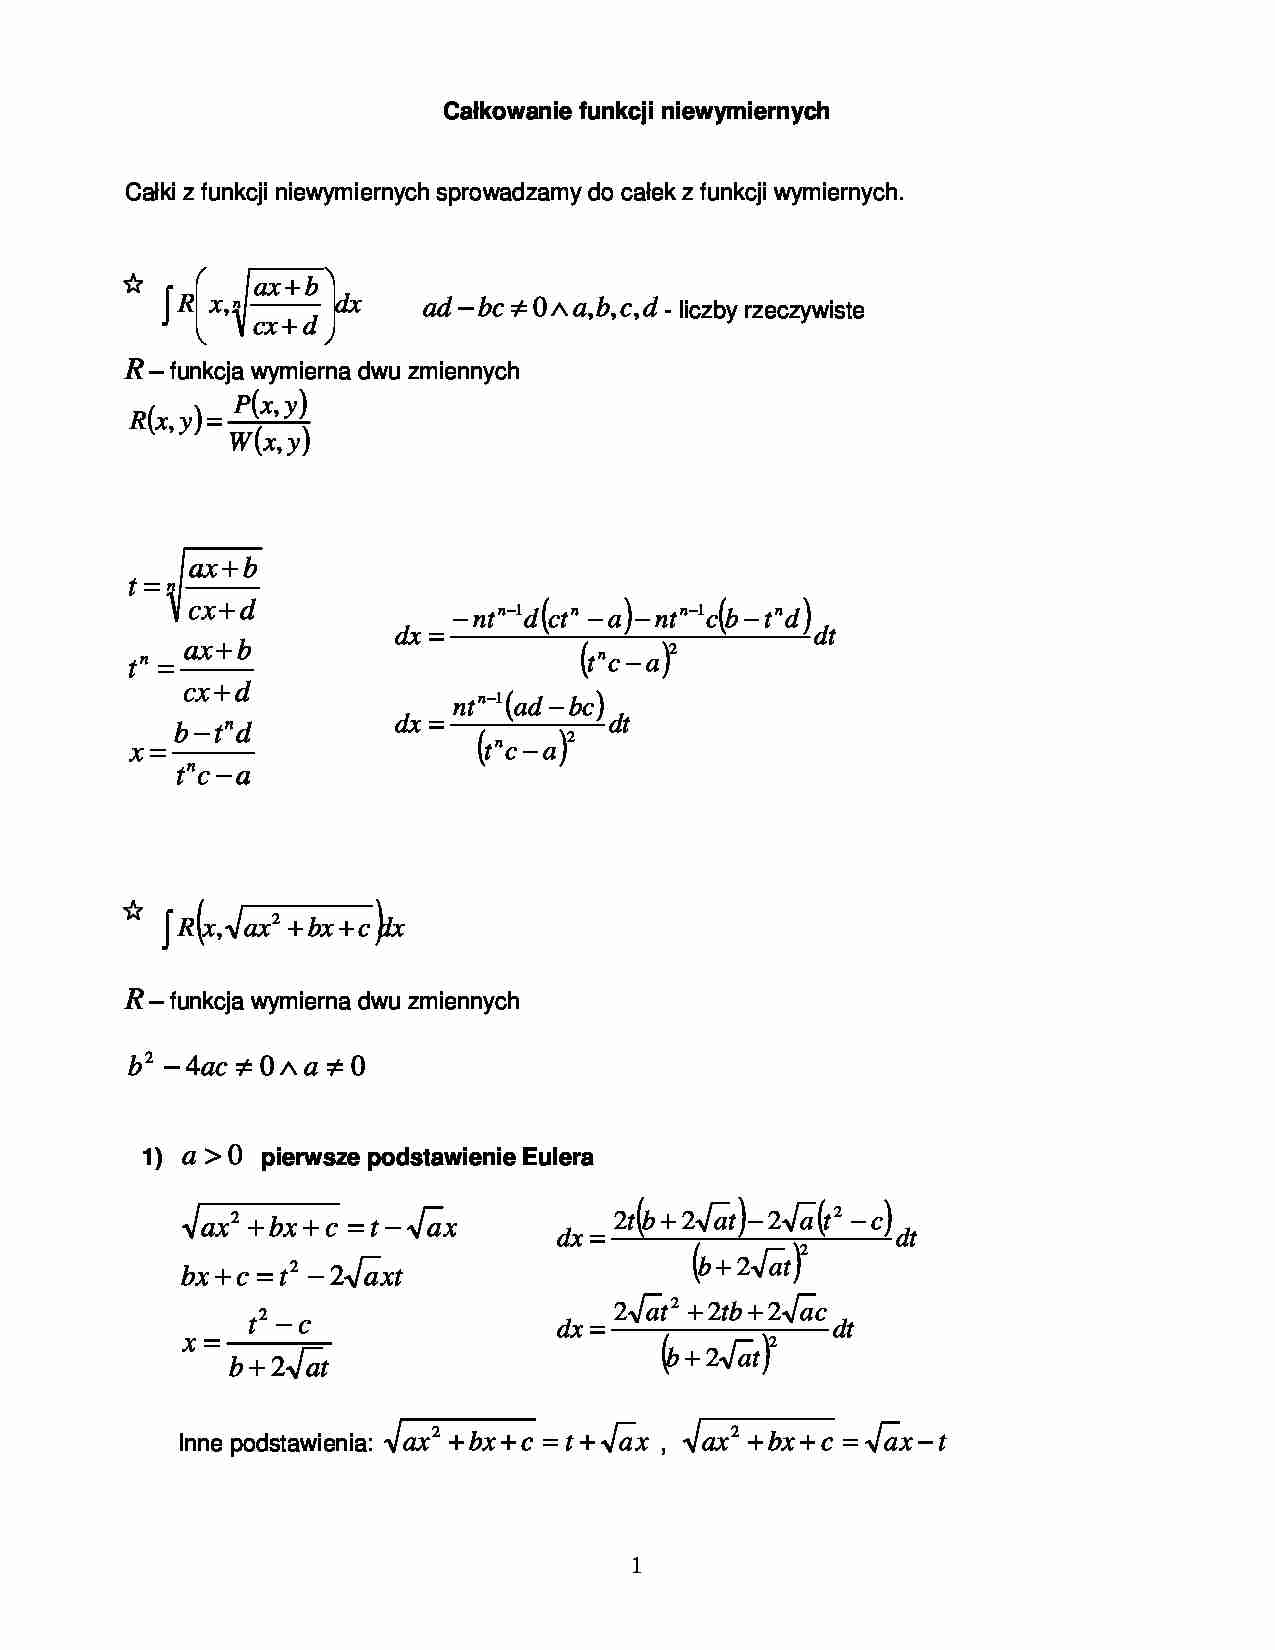 Całkowanie funkcji niewymiernych - Funkcja wymierna - strona 1